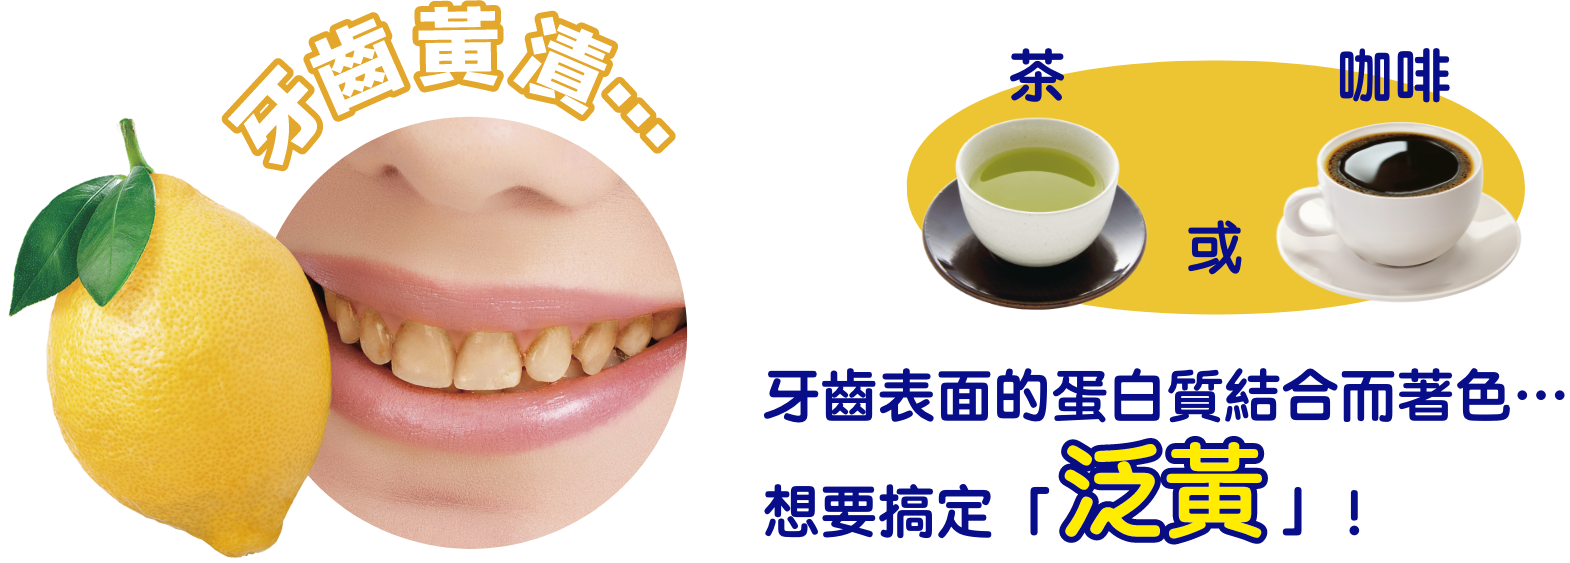 牙齒黃漬… 茶 咖啡 牙齒表面的蛋白質結合而著色…想要搞定「泛黃」!